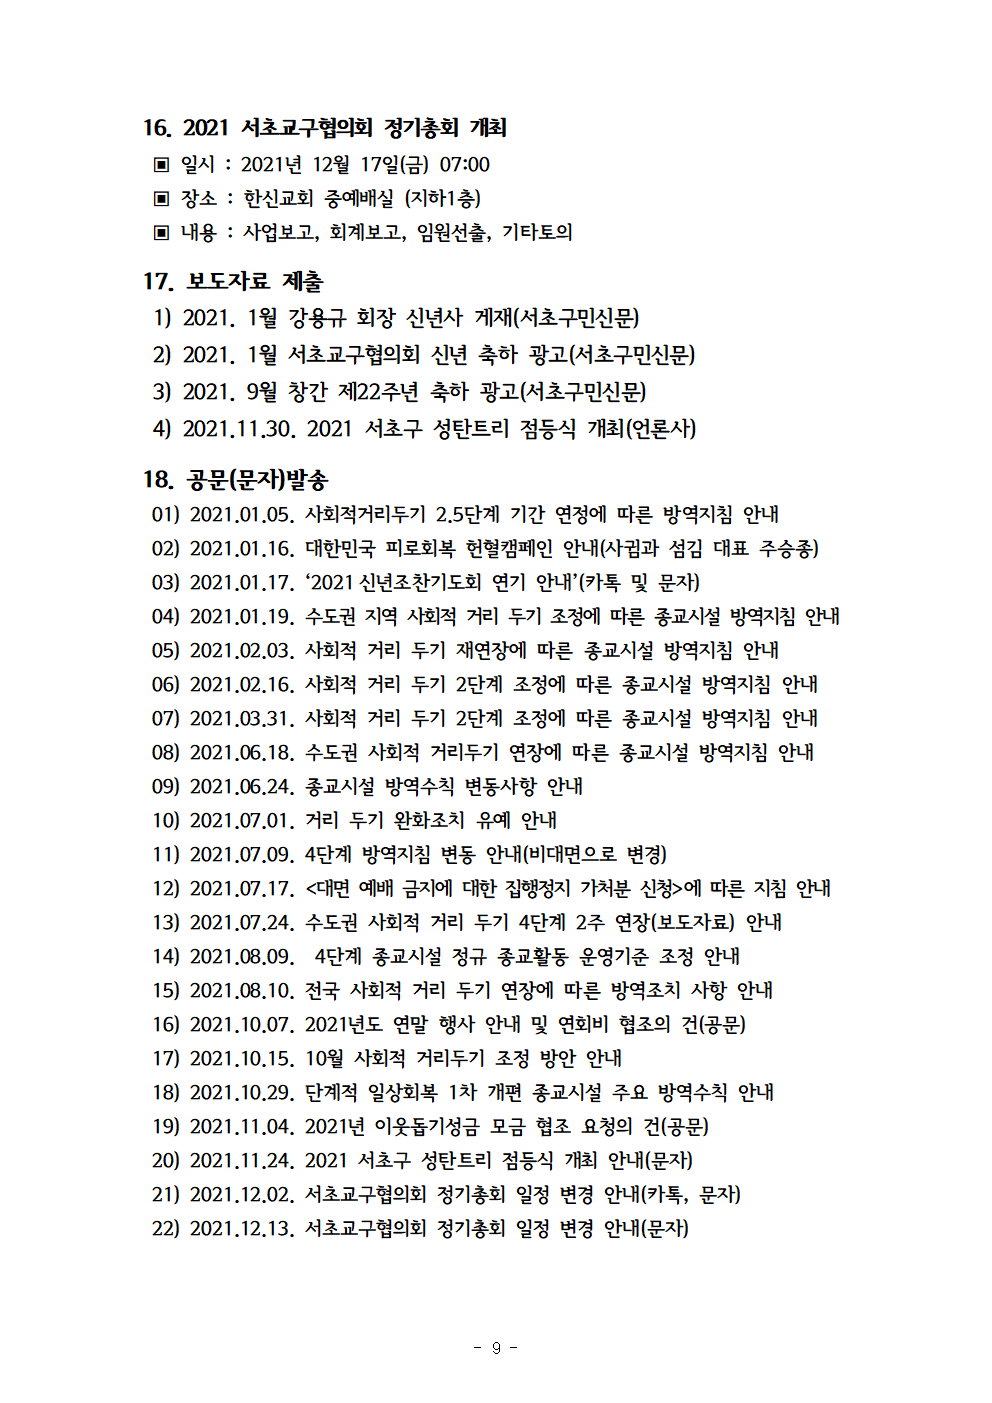 2021회기 서초교구협의회 정기총회자료(12.17)_홈피용010.png